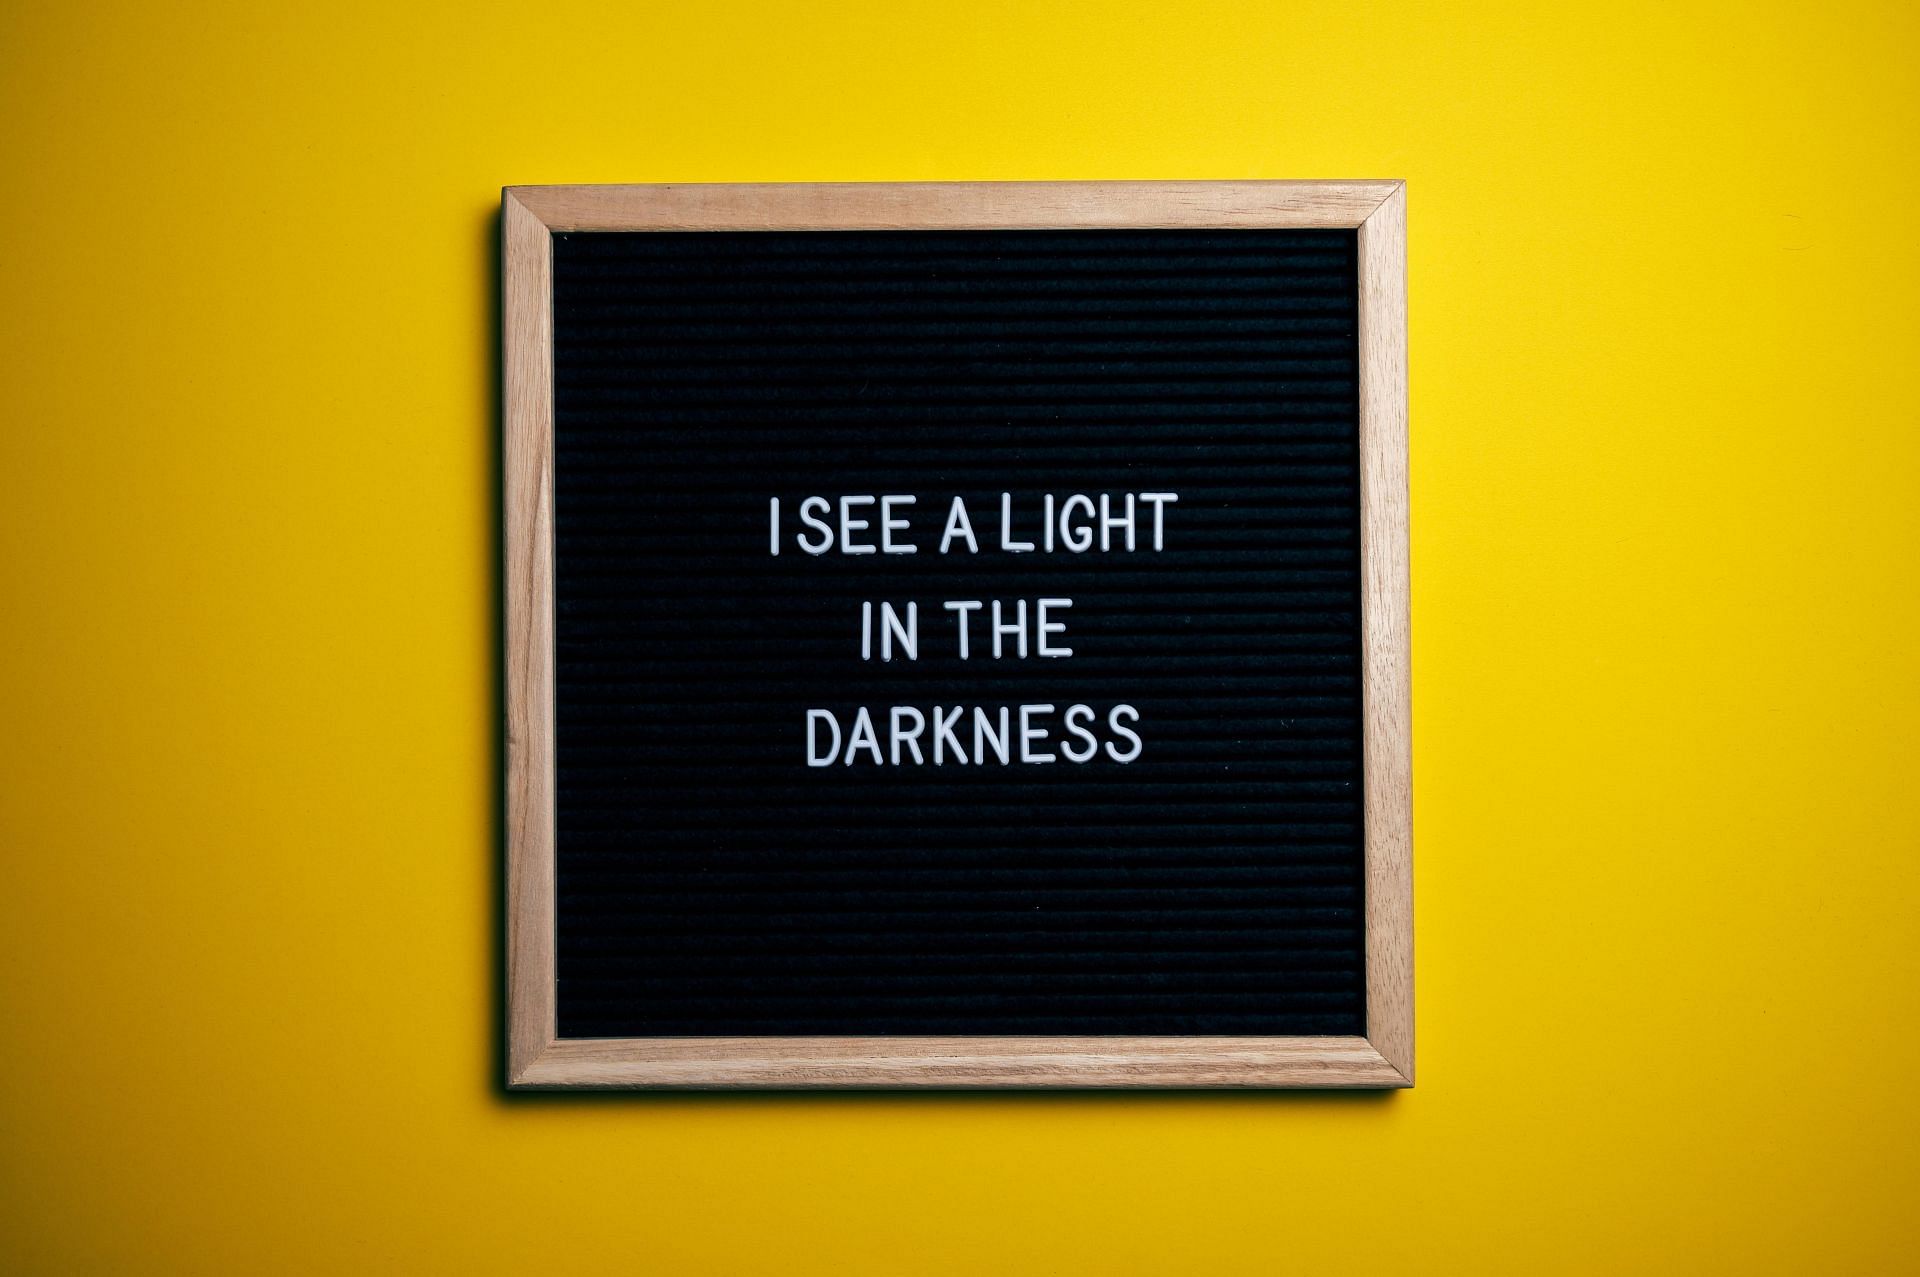 Light in darkness (Image via Pexels)